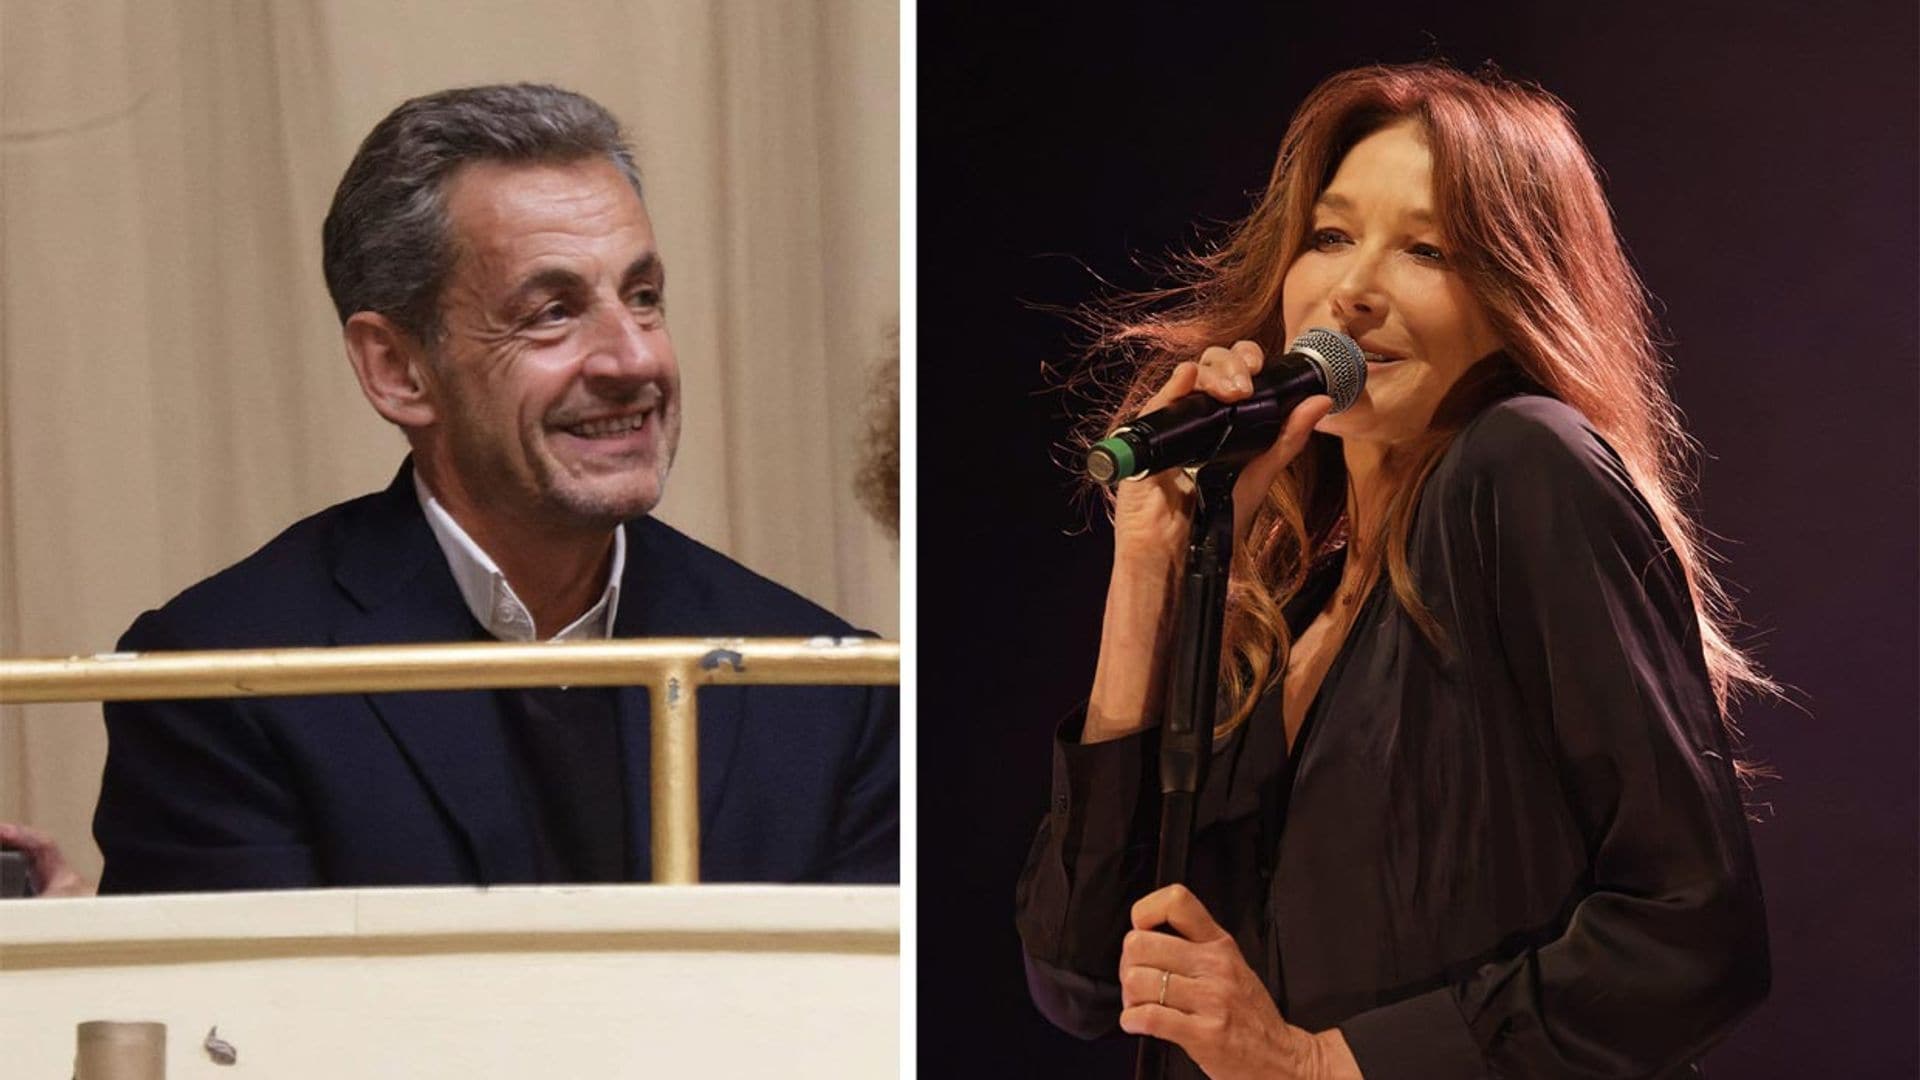 La mirada de Nicolas Sarkozy a Carla Bruni, el gesto que resume un 'flechazo' de trece años